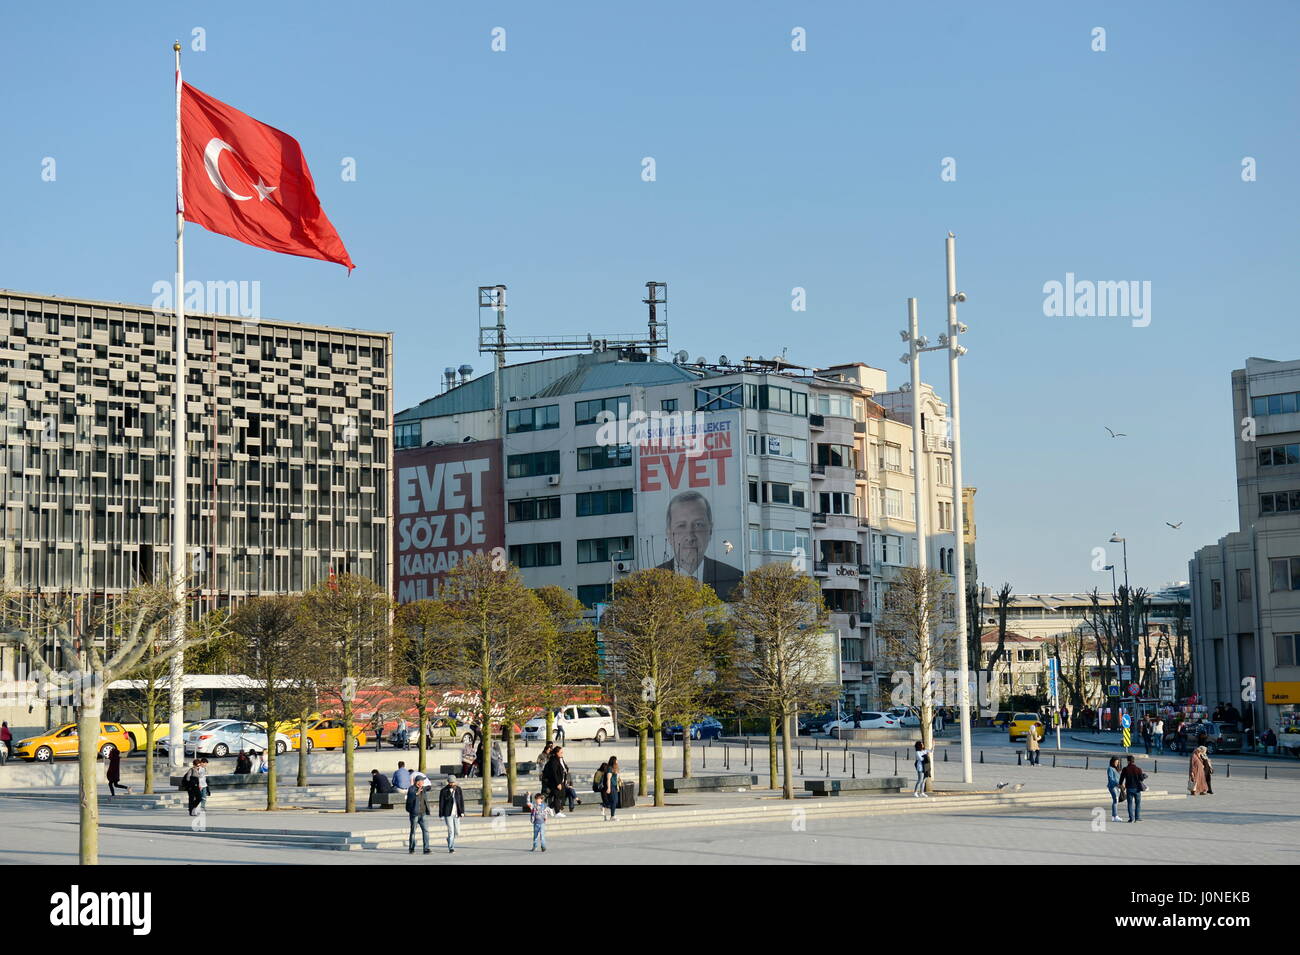 Istanbul, Turquie. 15th avril 2017. Istanbul un jour avant le référendum. La campagne électorale d'aujourd'hui au dernier sprint. L'image montre des affiches « vote avec oui ». Credit: Franz PERC / Alamy Live News Banque D'Images